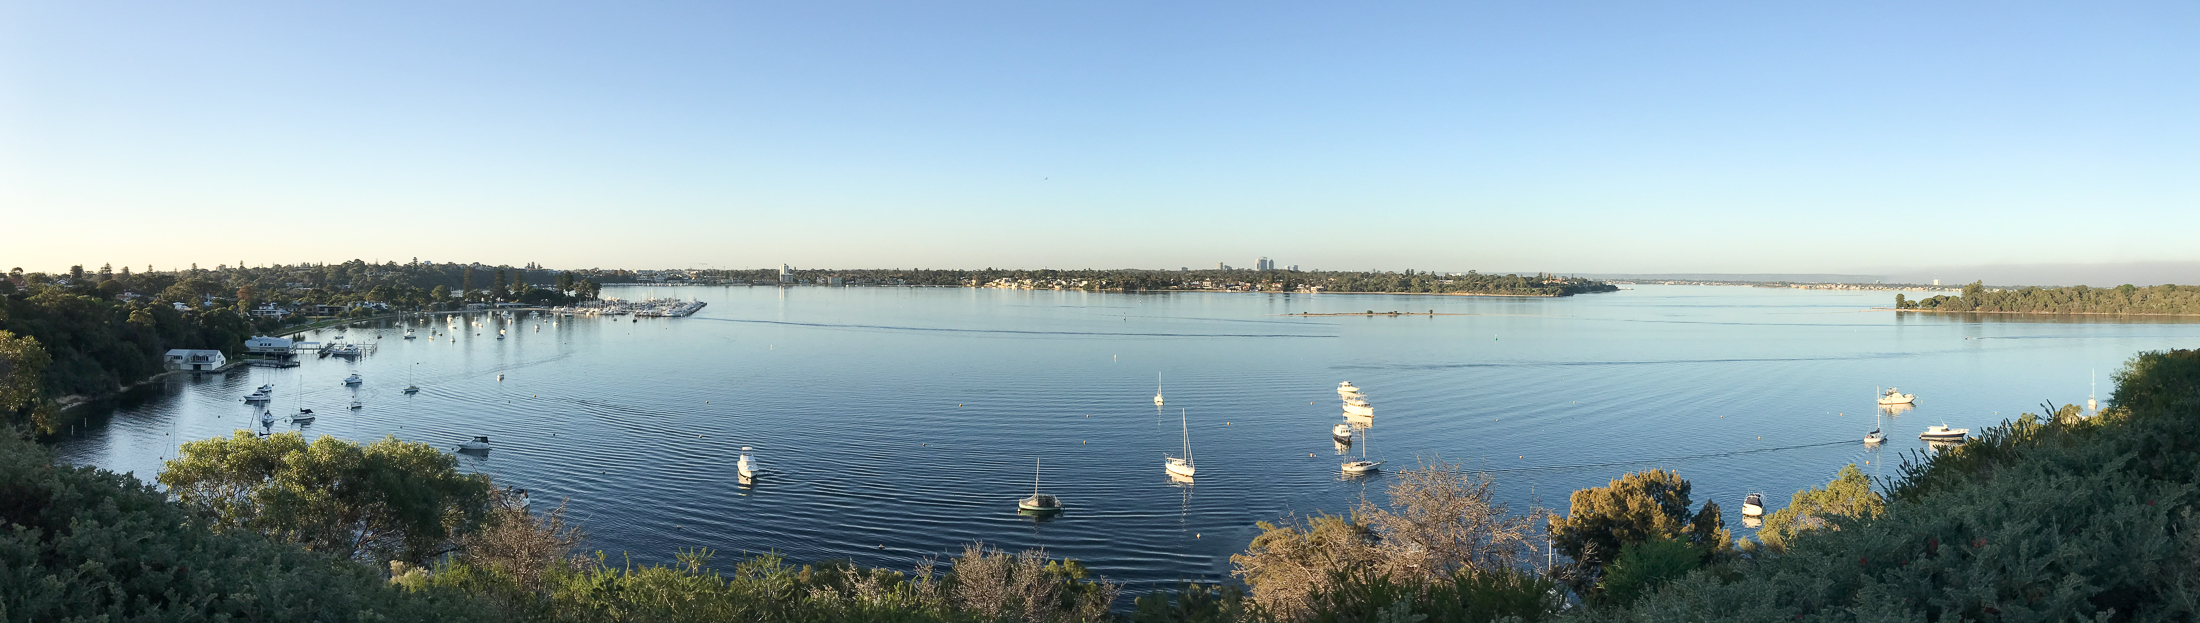 The Swan River, Perth, WA